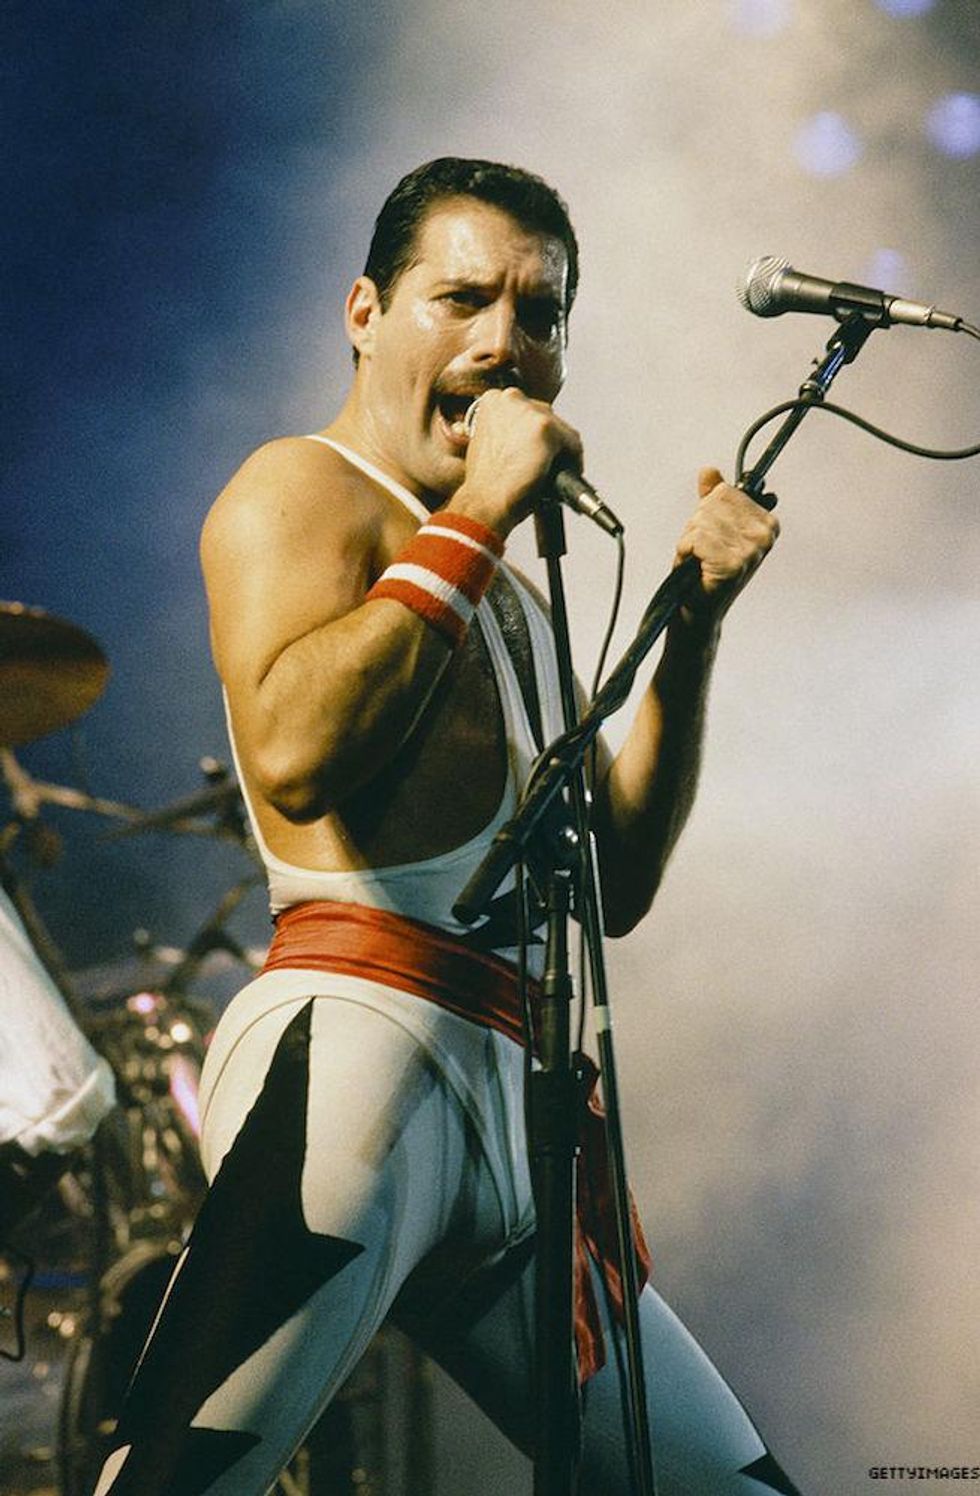 Freddie Mercury onstage